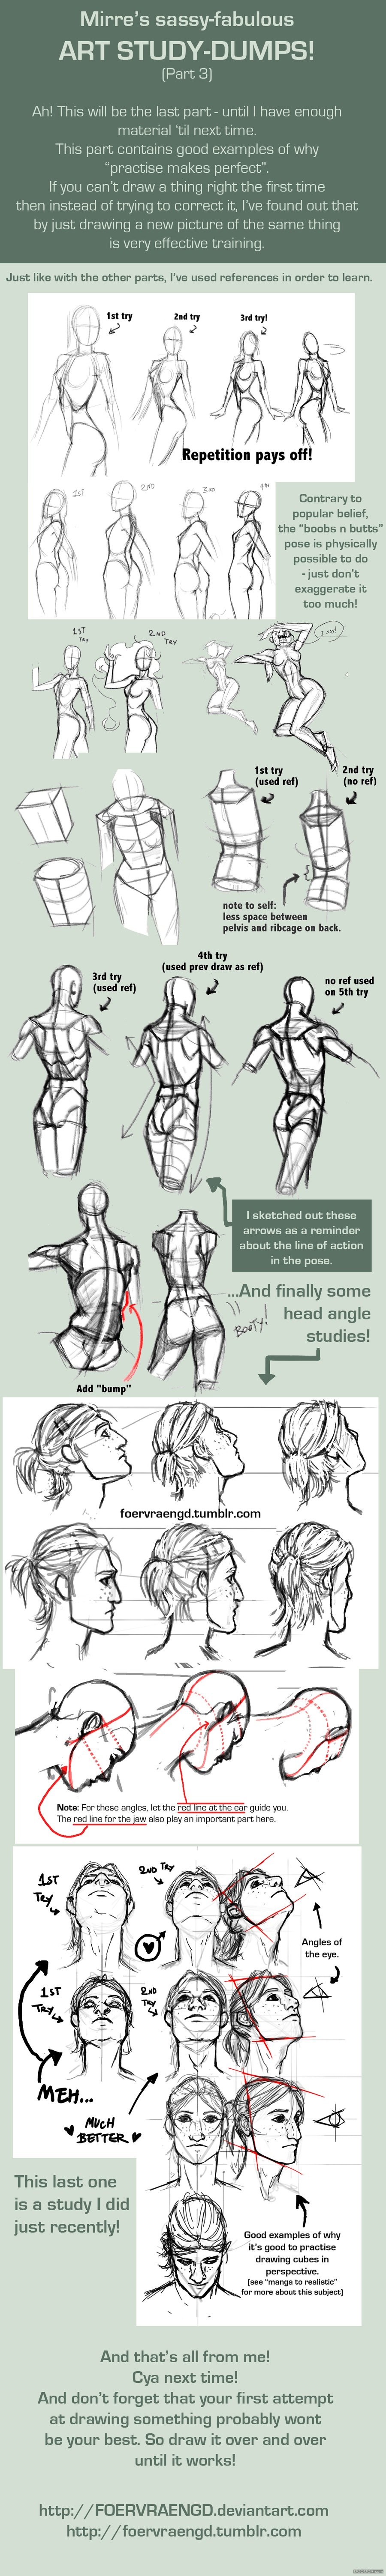 人体结构画法之肩部-胸腔-背部动作